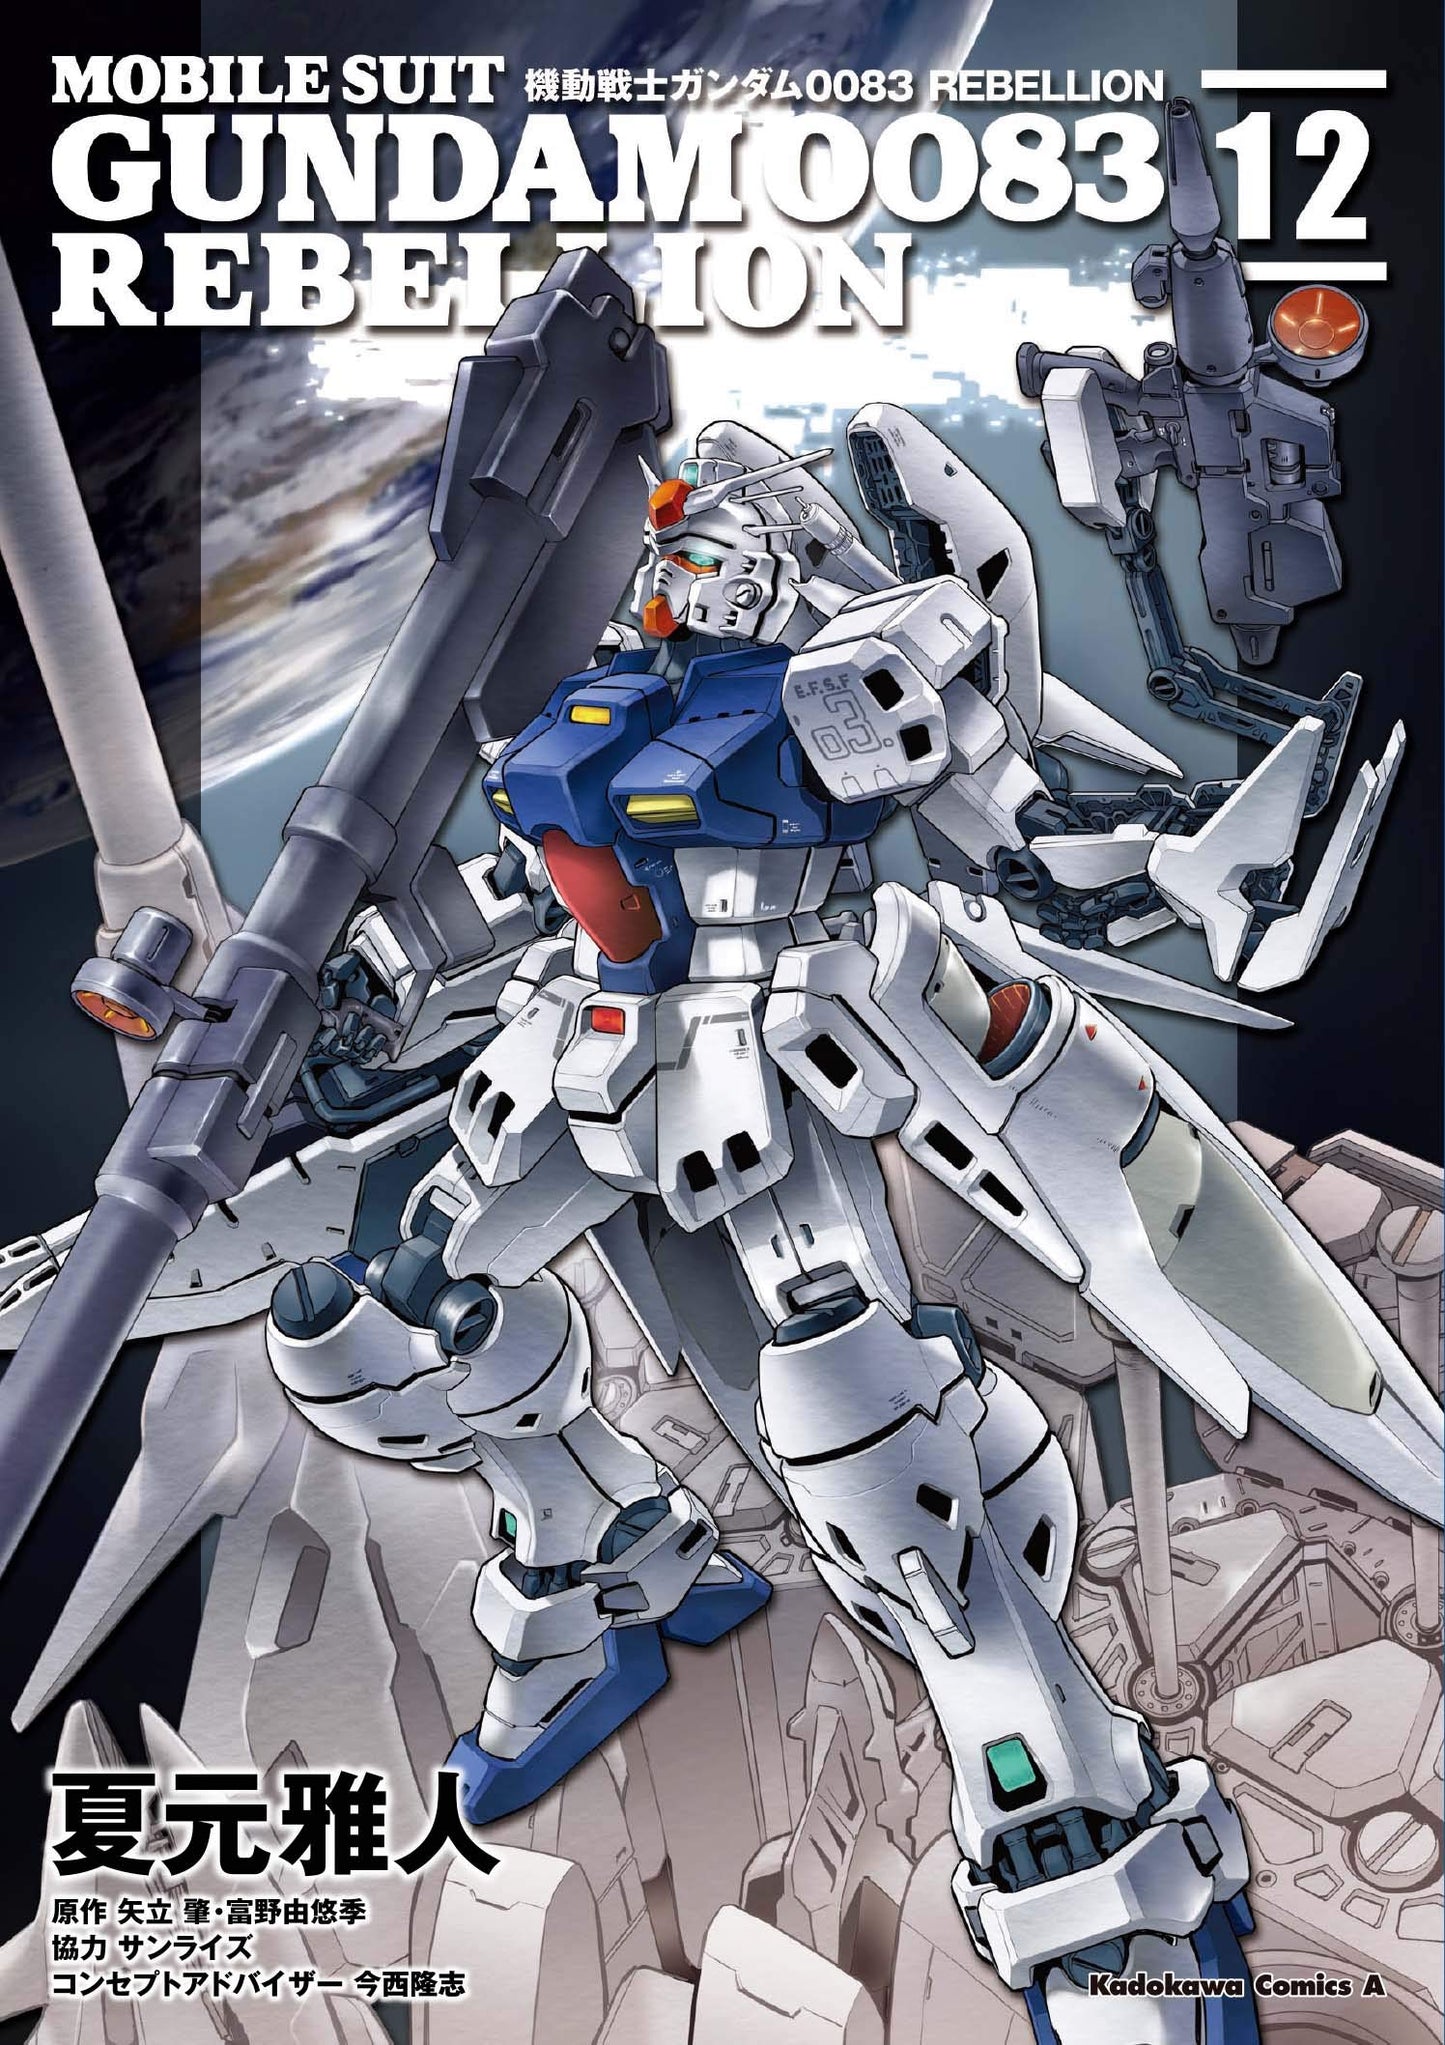 Mobile Suit Gundam 0083 Rebellion #12 /Comic